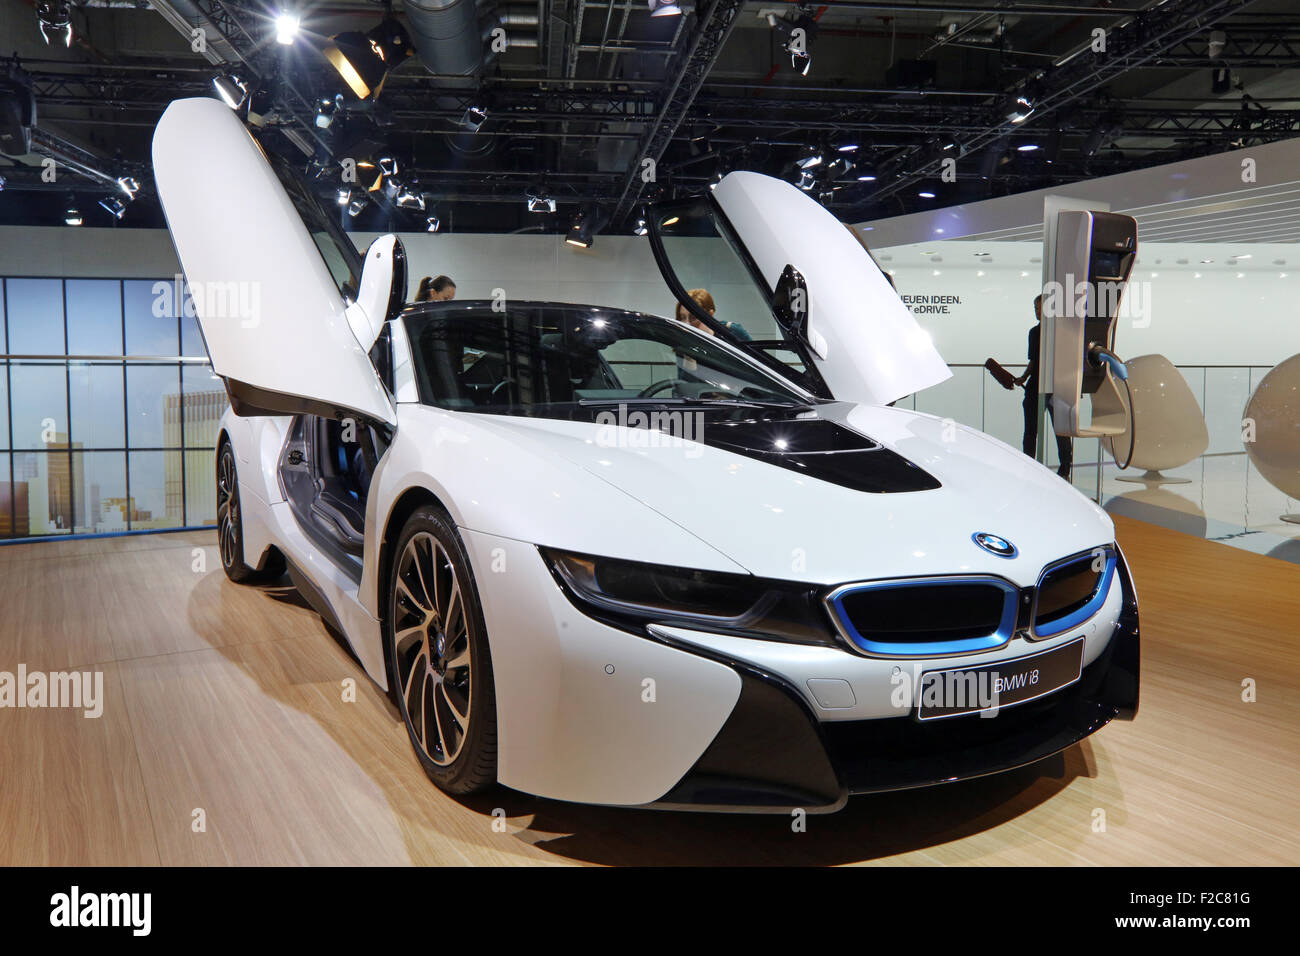 Frankfurt/M, 16.09.2015 - Hybrid Konzeptfahrzeug BMW i8 auf dem BMW-Stand auf der 66. internationalen Motor Show IAA 2015 (Internationale Automobil Ausstellung, IAA) in Frankfurt/Main, Deutschland Stockfoto